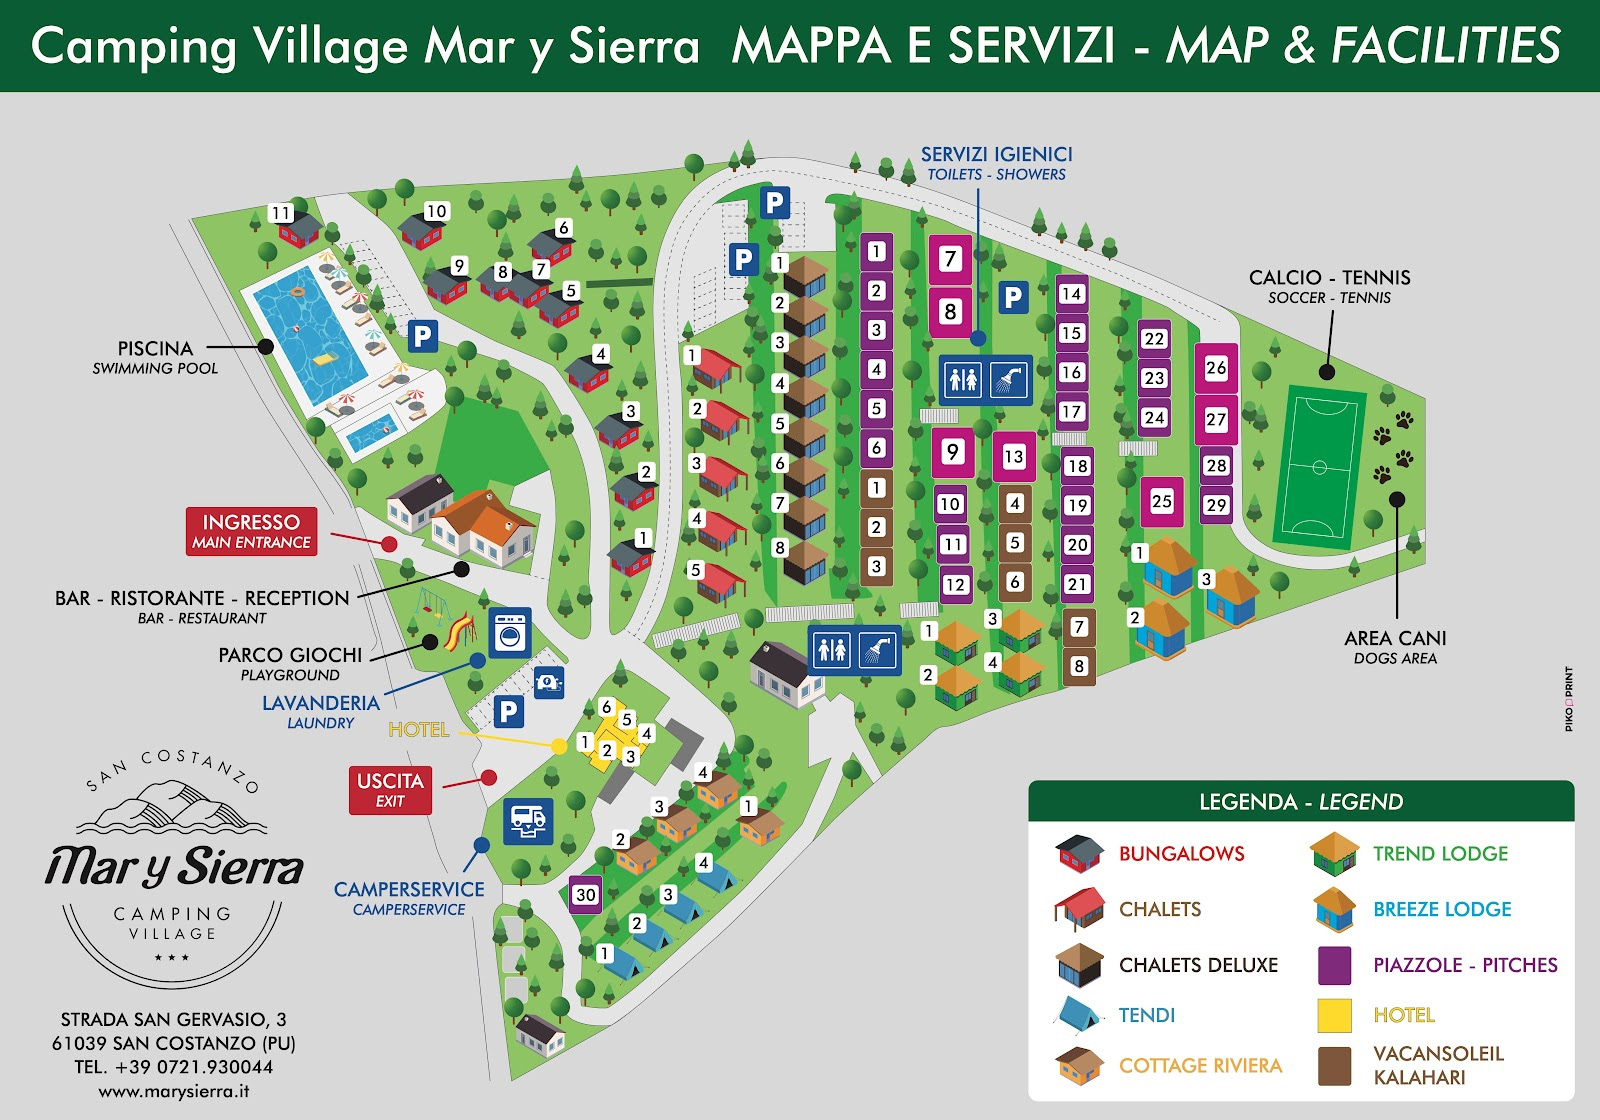 Campsite map Mar y Sierra